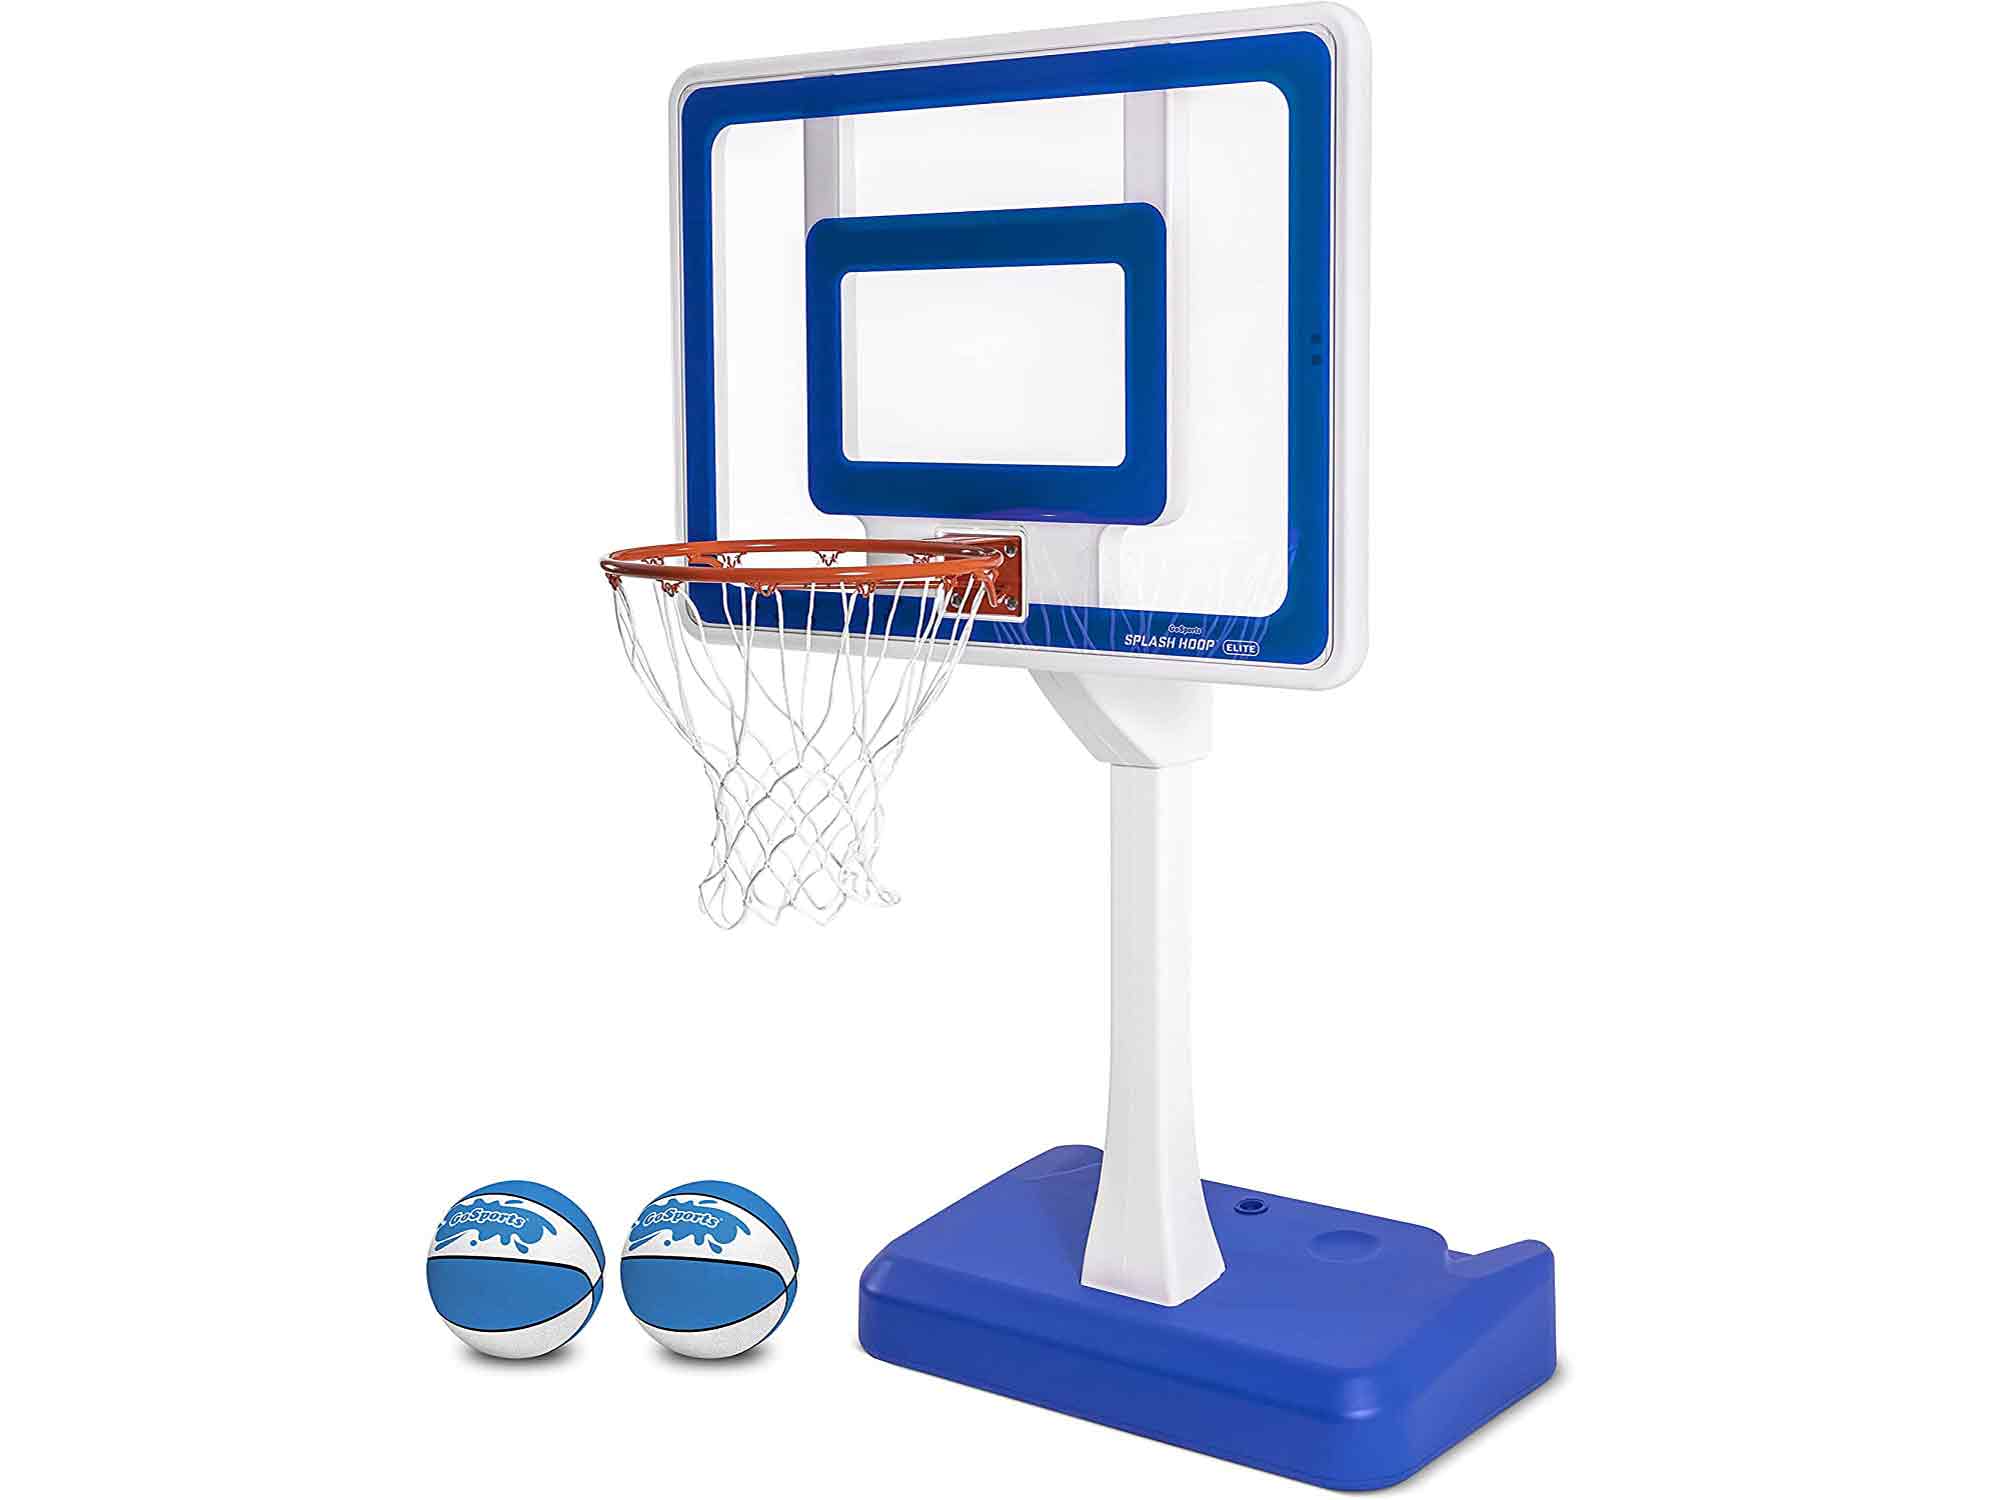 GoSports Splash Hoop Elite Pool Basketball Hoop with Water Weighted Base, Regulation Steel Rim and 2 Pool Basketballs